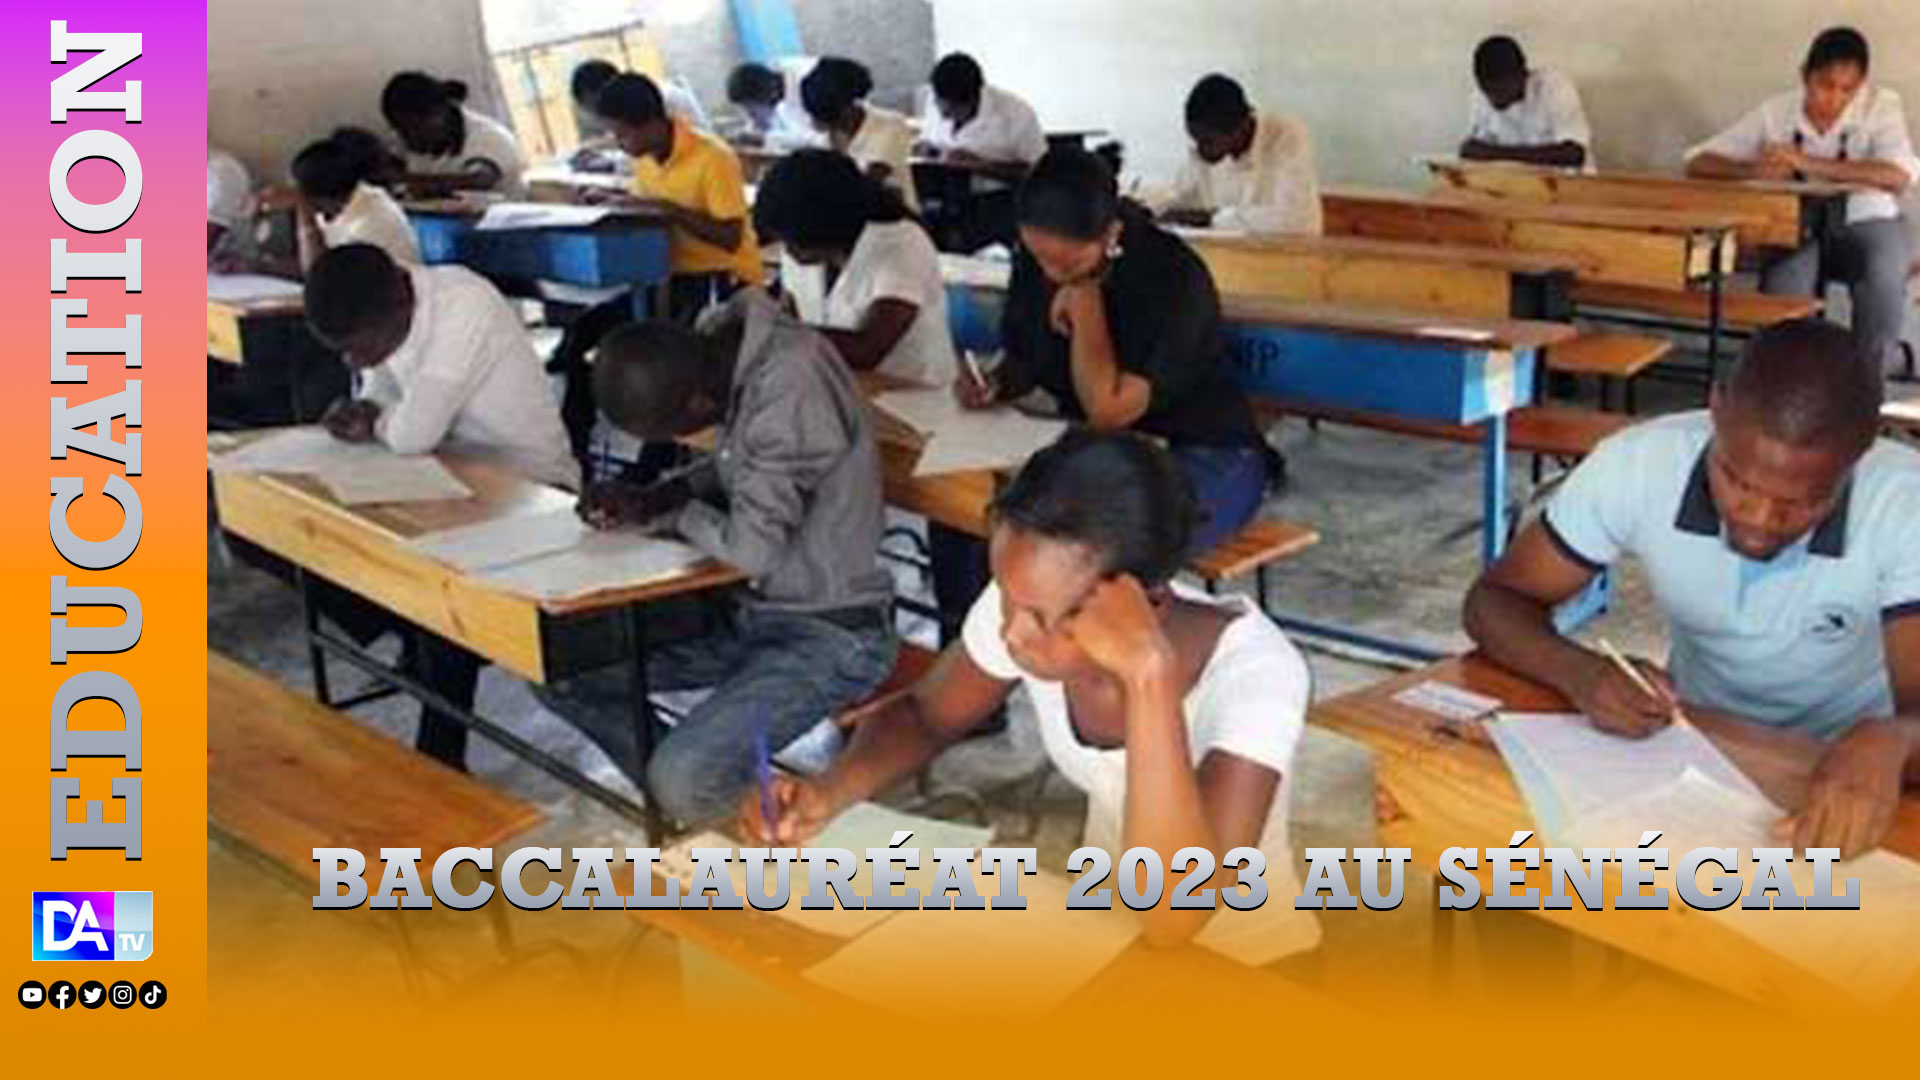 Baccalauréat 2023 au Sénégal : 155.109 candidats circonscrits dans 495 jurys avec un taux de participation des filles de 57% et plus de 52% de taux de réussite attendu…